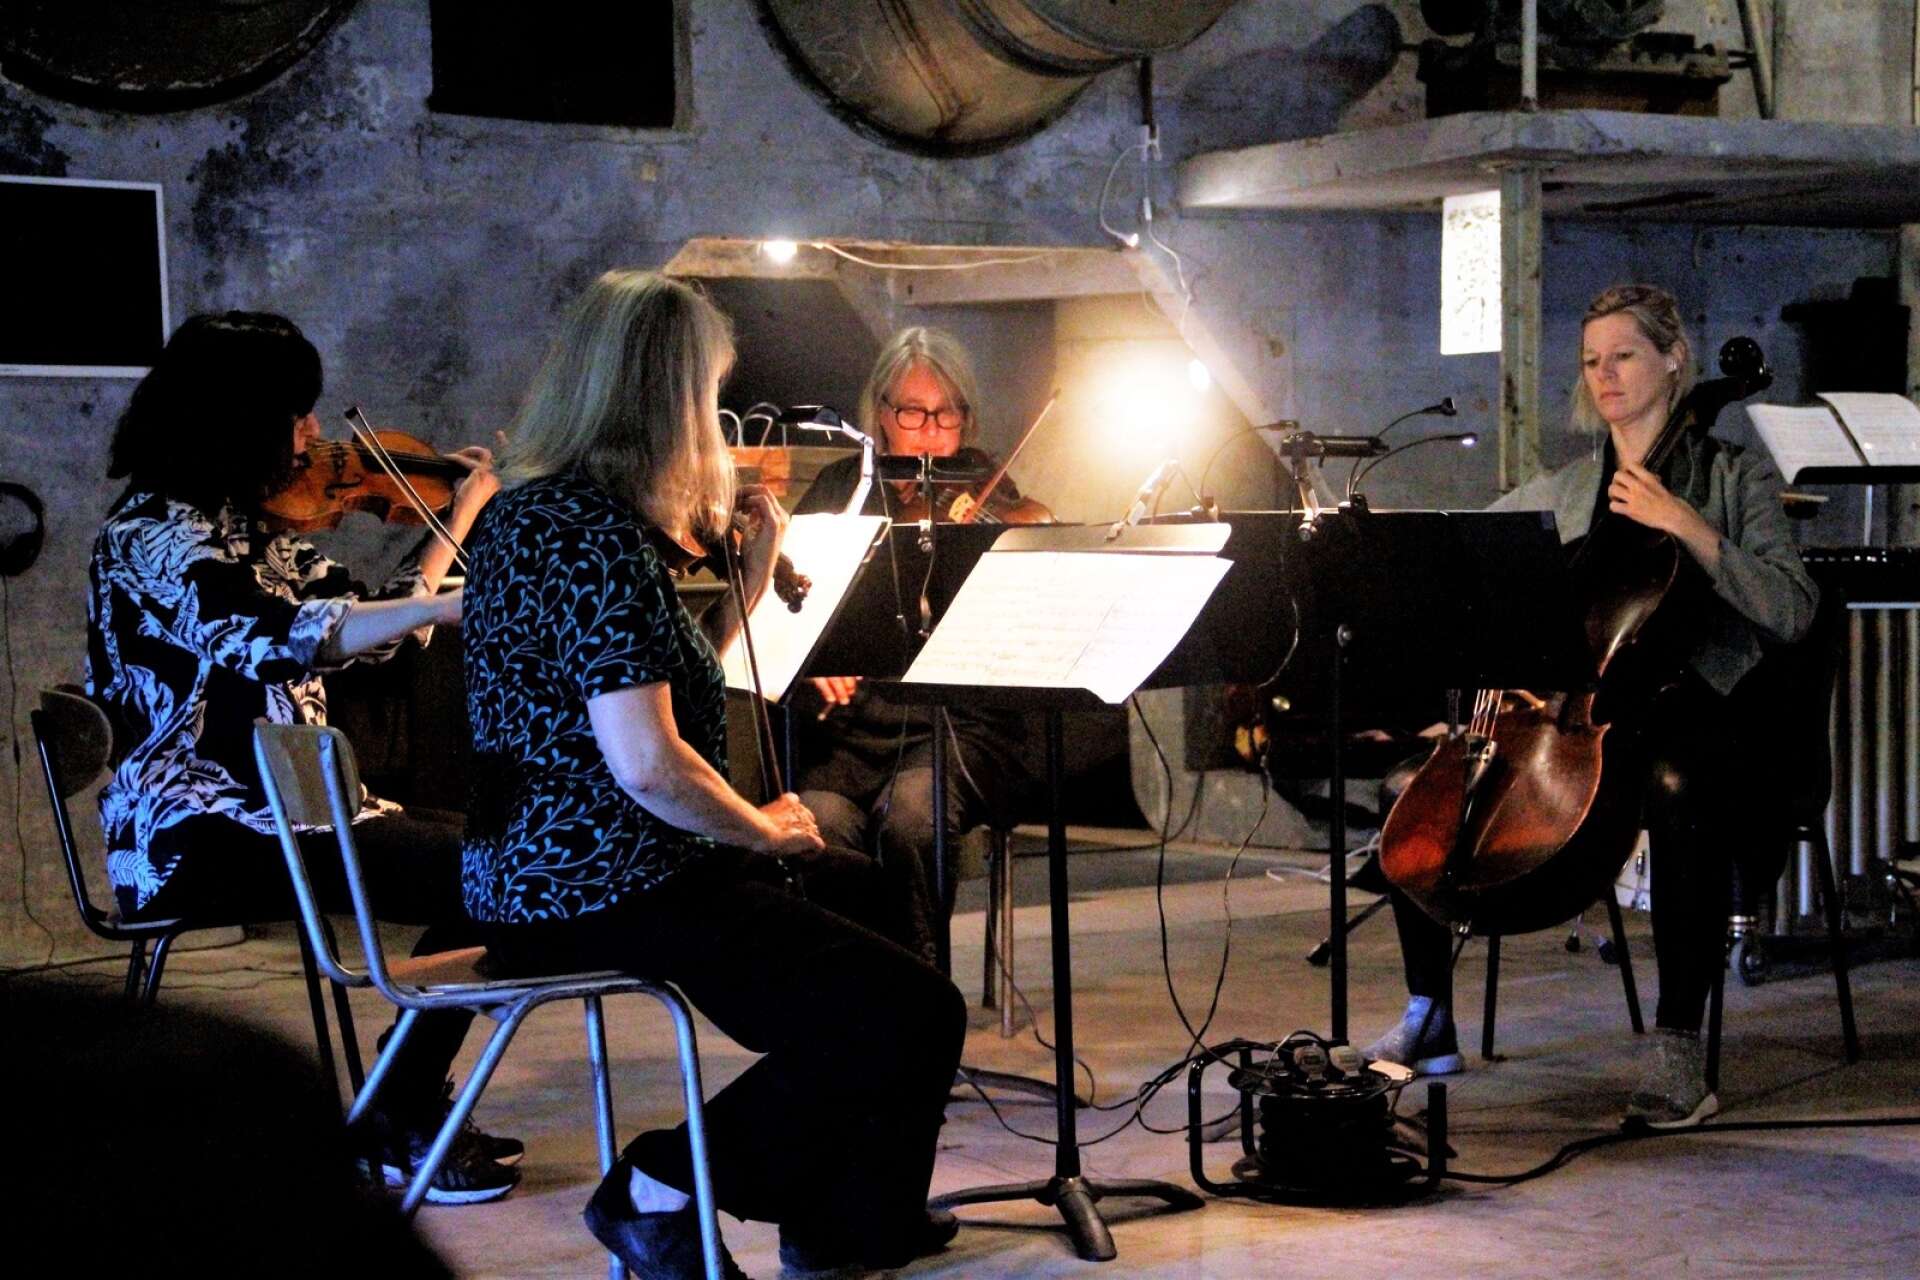 En stråkkvartett bestående av systrarna Anna och Eva Lindal, violin, Elsbeth Bergh, viola och My Hellgren, cello, spelade stycket ”Psalm XIII”av Djuro Zivkovic och fick långa applåder av publiken i Holländeriet.